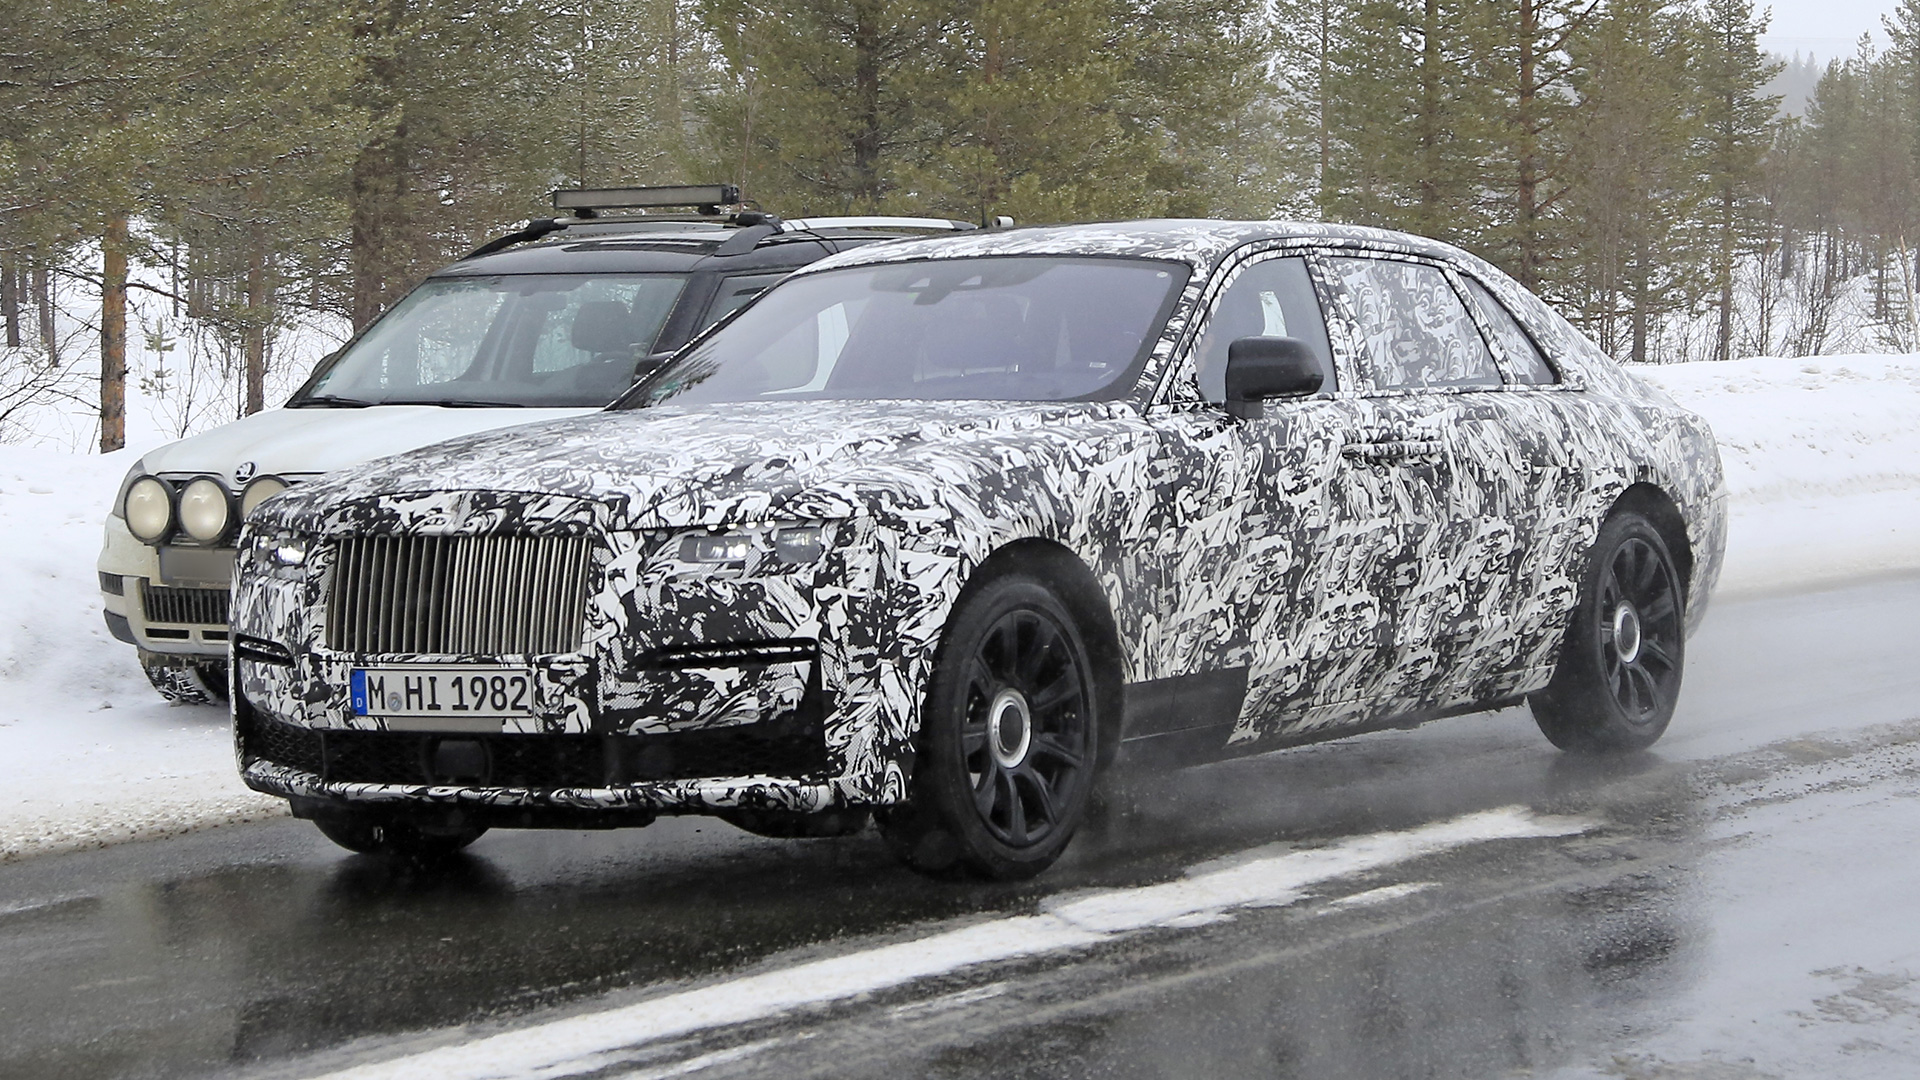 New 2020 Rolls Royce Ghost spied testing in long-wheelbase 